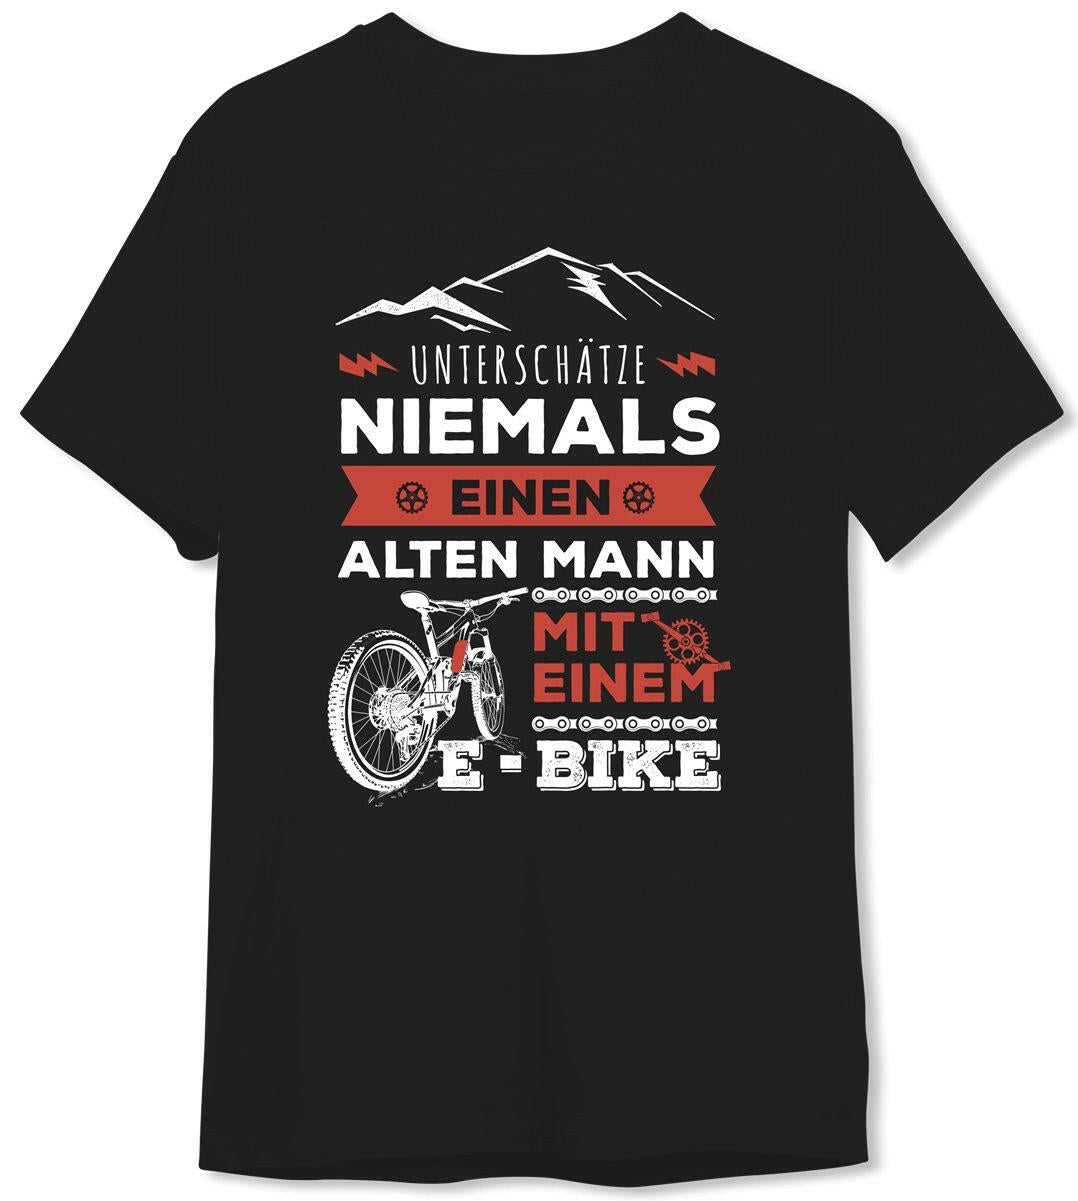 Bild: T-Shirt Herren - Unterschätze niemals einen alten Mann mit einem E-Bike Geschenkidee